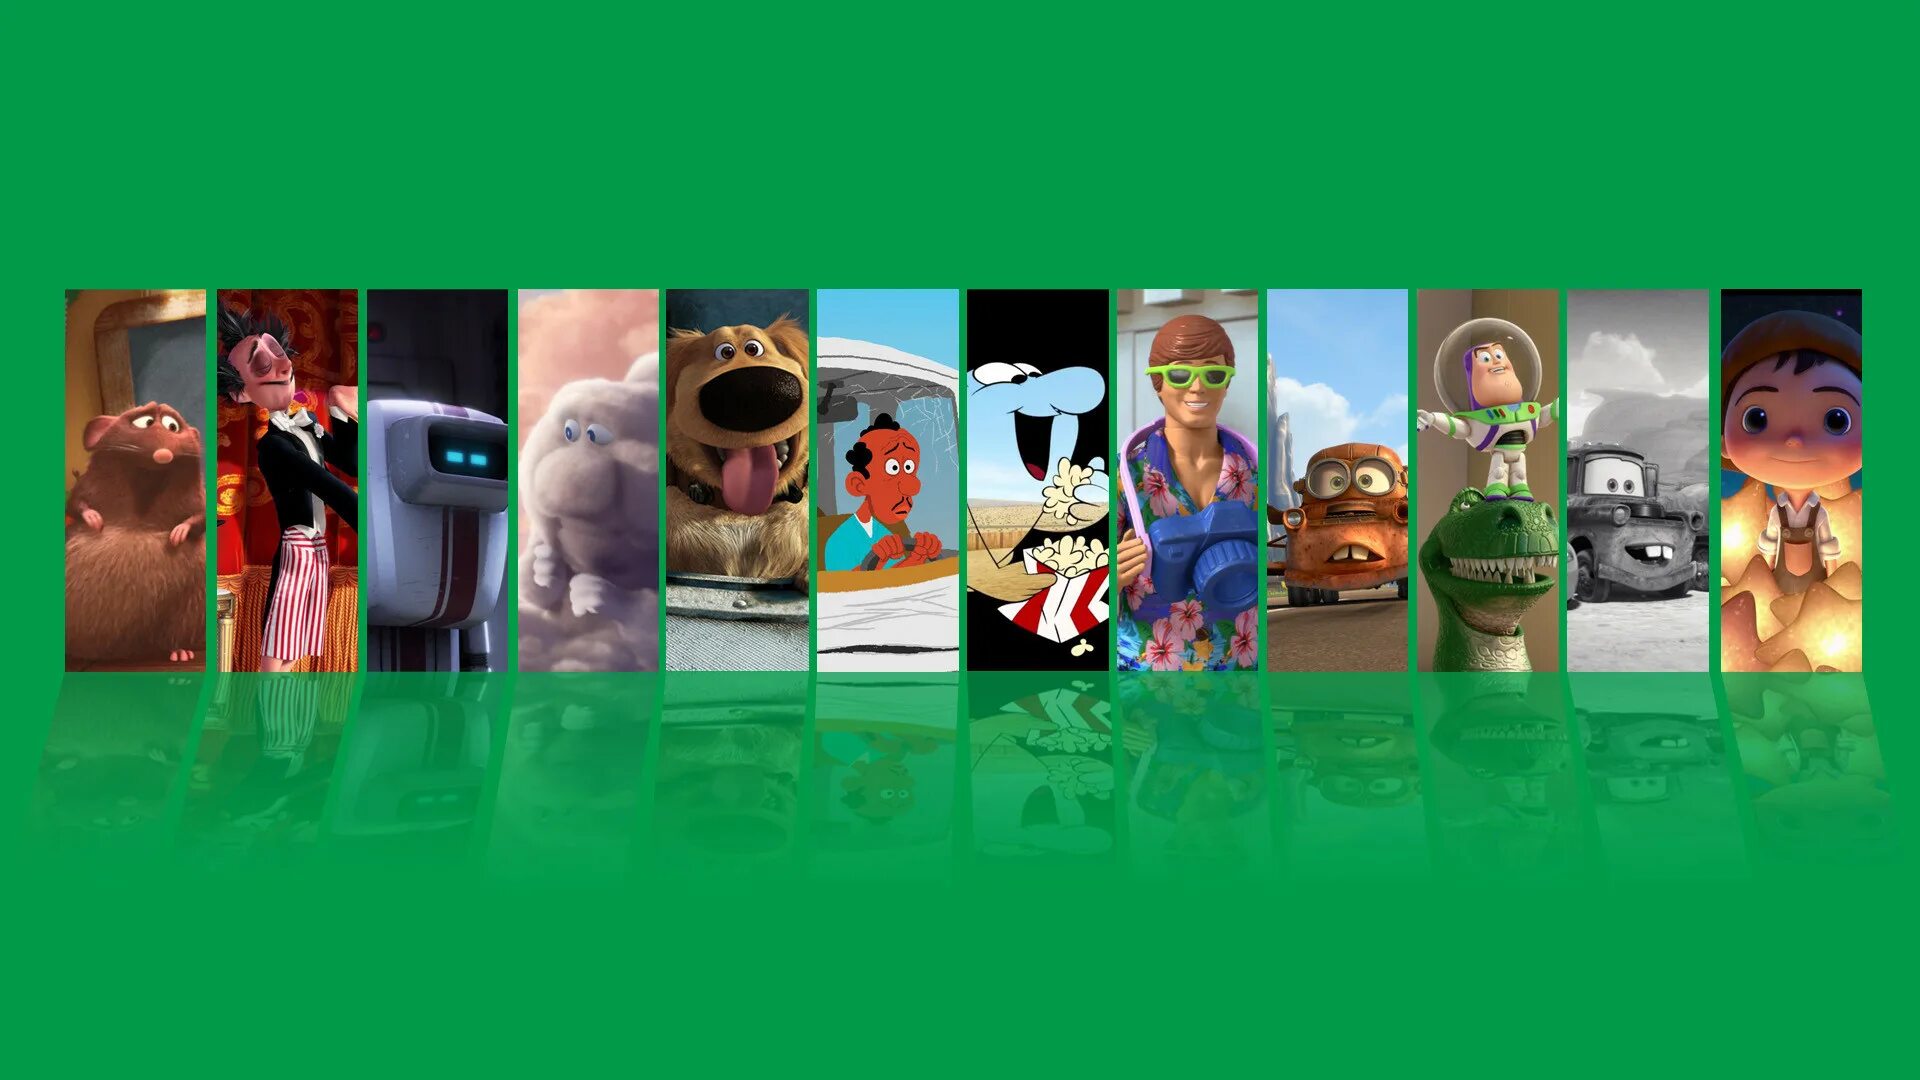 Коллекция короткометражных мультфильмов Pixar том 3. Коллекция короткометражных мультфильмов Pixar том 2. Коллекция короткометражных мультфильмов Pixar: том 1 (2018). Коллекция короткометражных мультфильмов Pixar том.